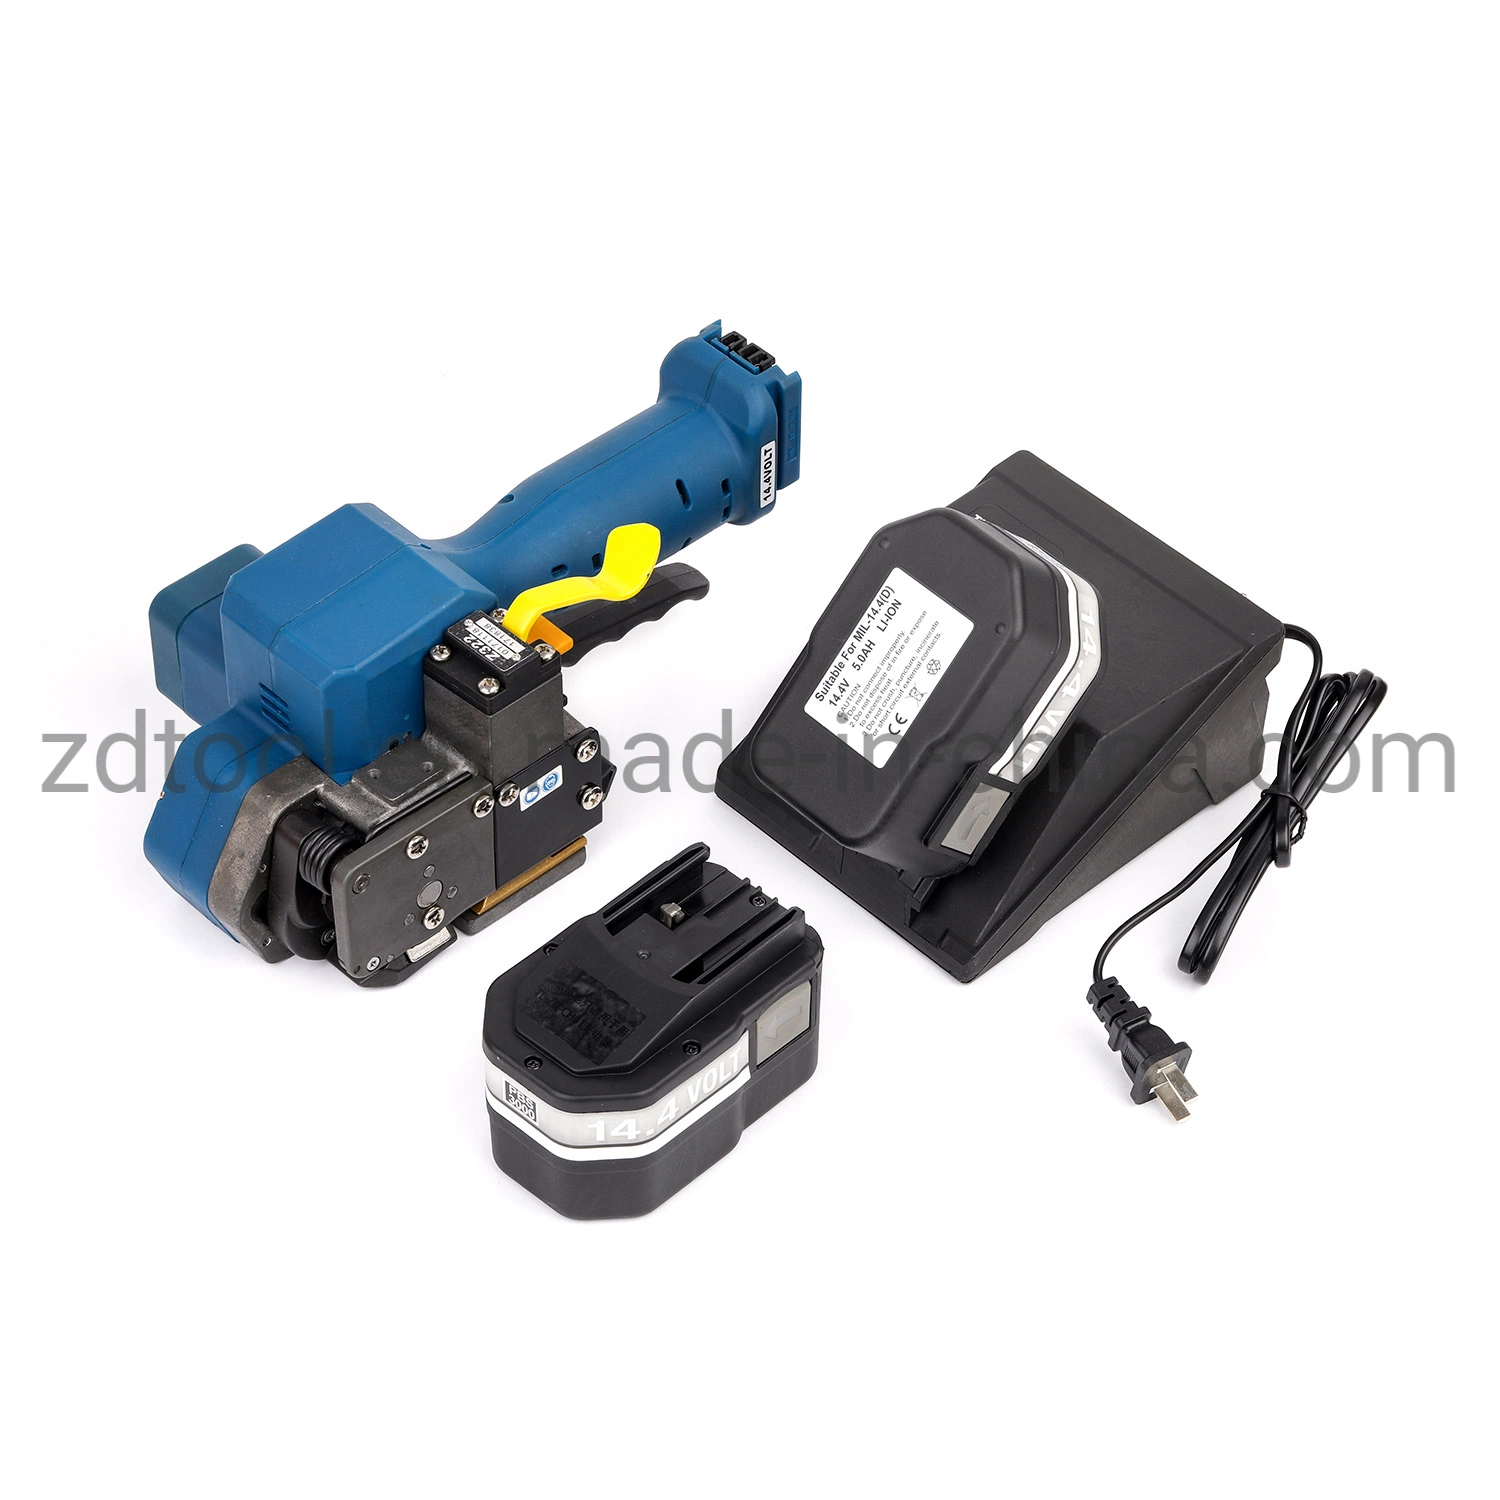 Ferramenta de cintas eléctricas manuais para Pet / Alça PP Power Tools (ZP323)